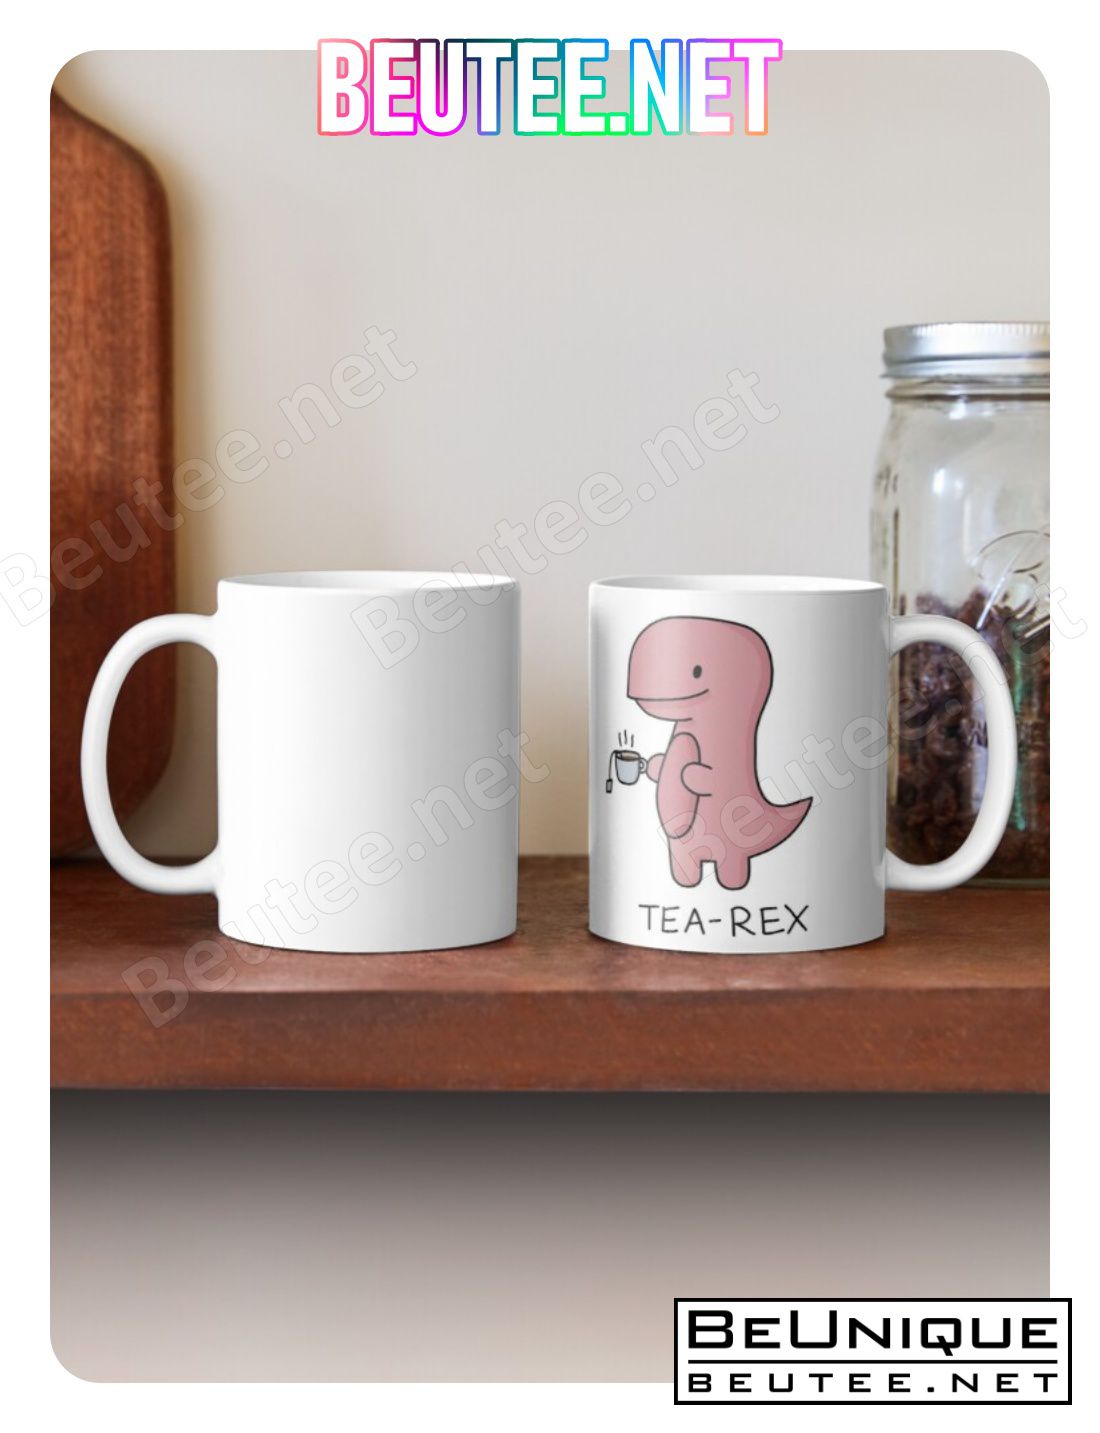 Tea-rex' Illustration Coffee Mug